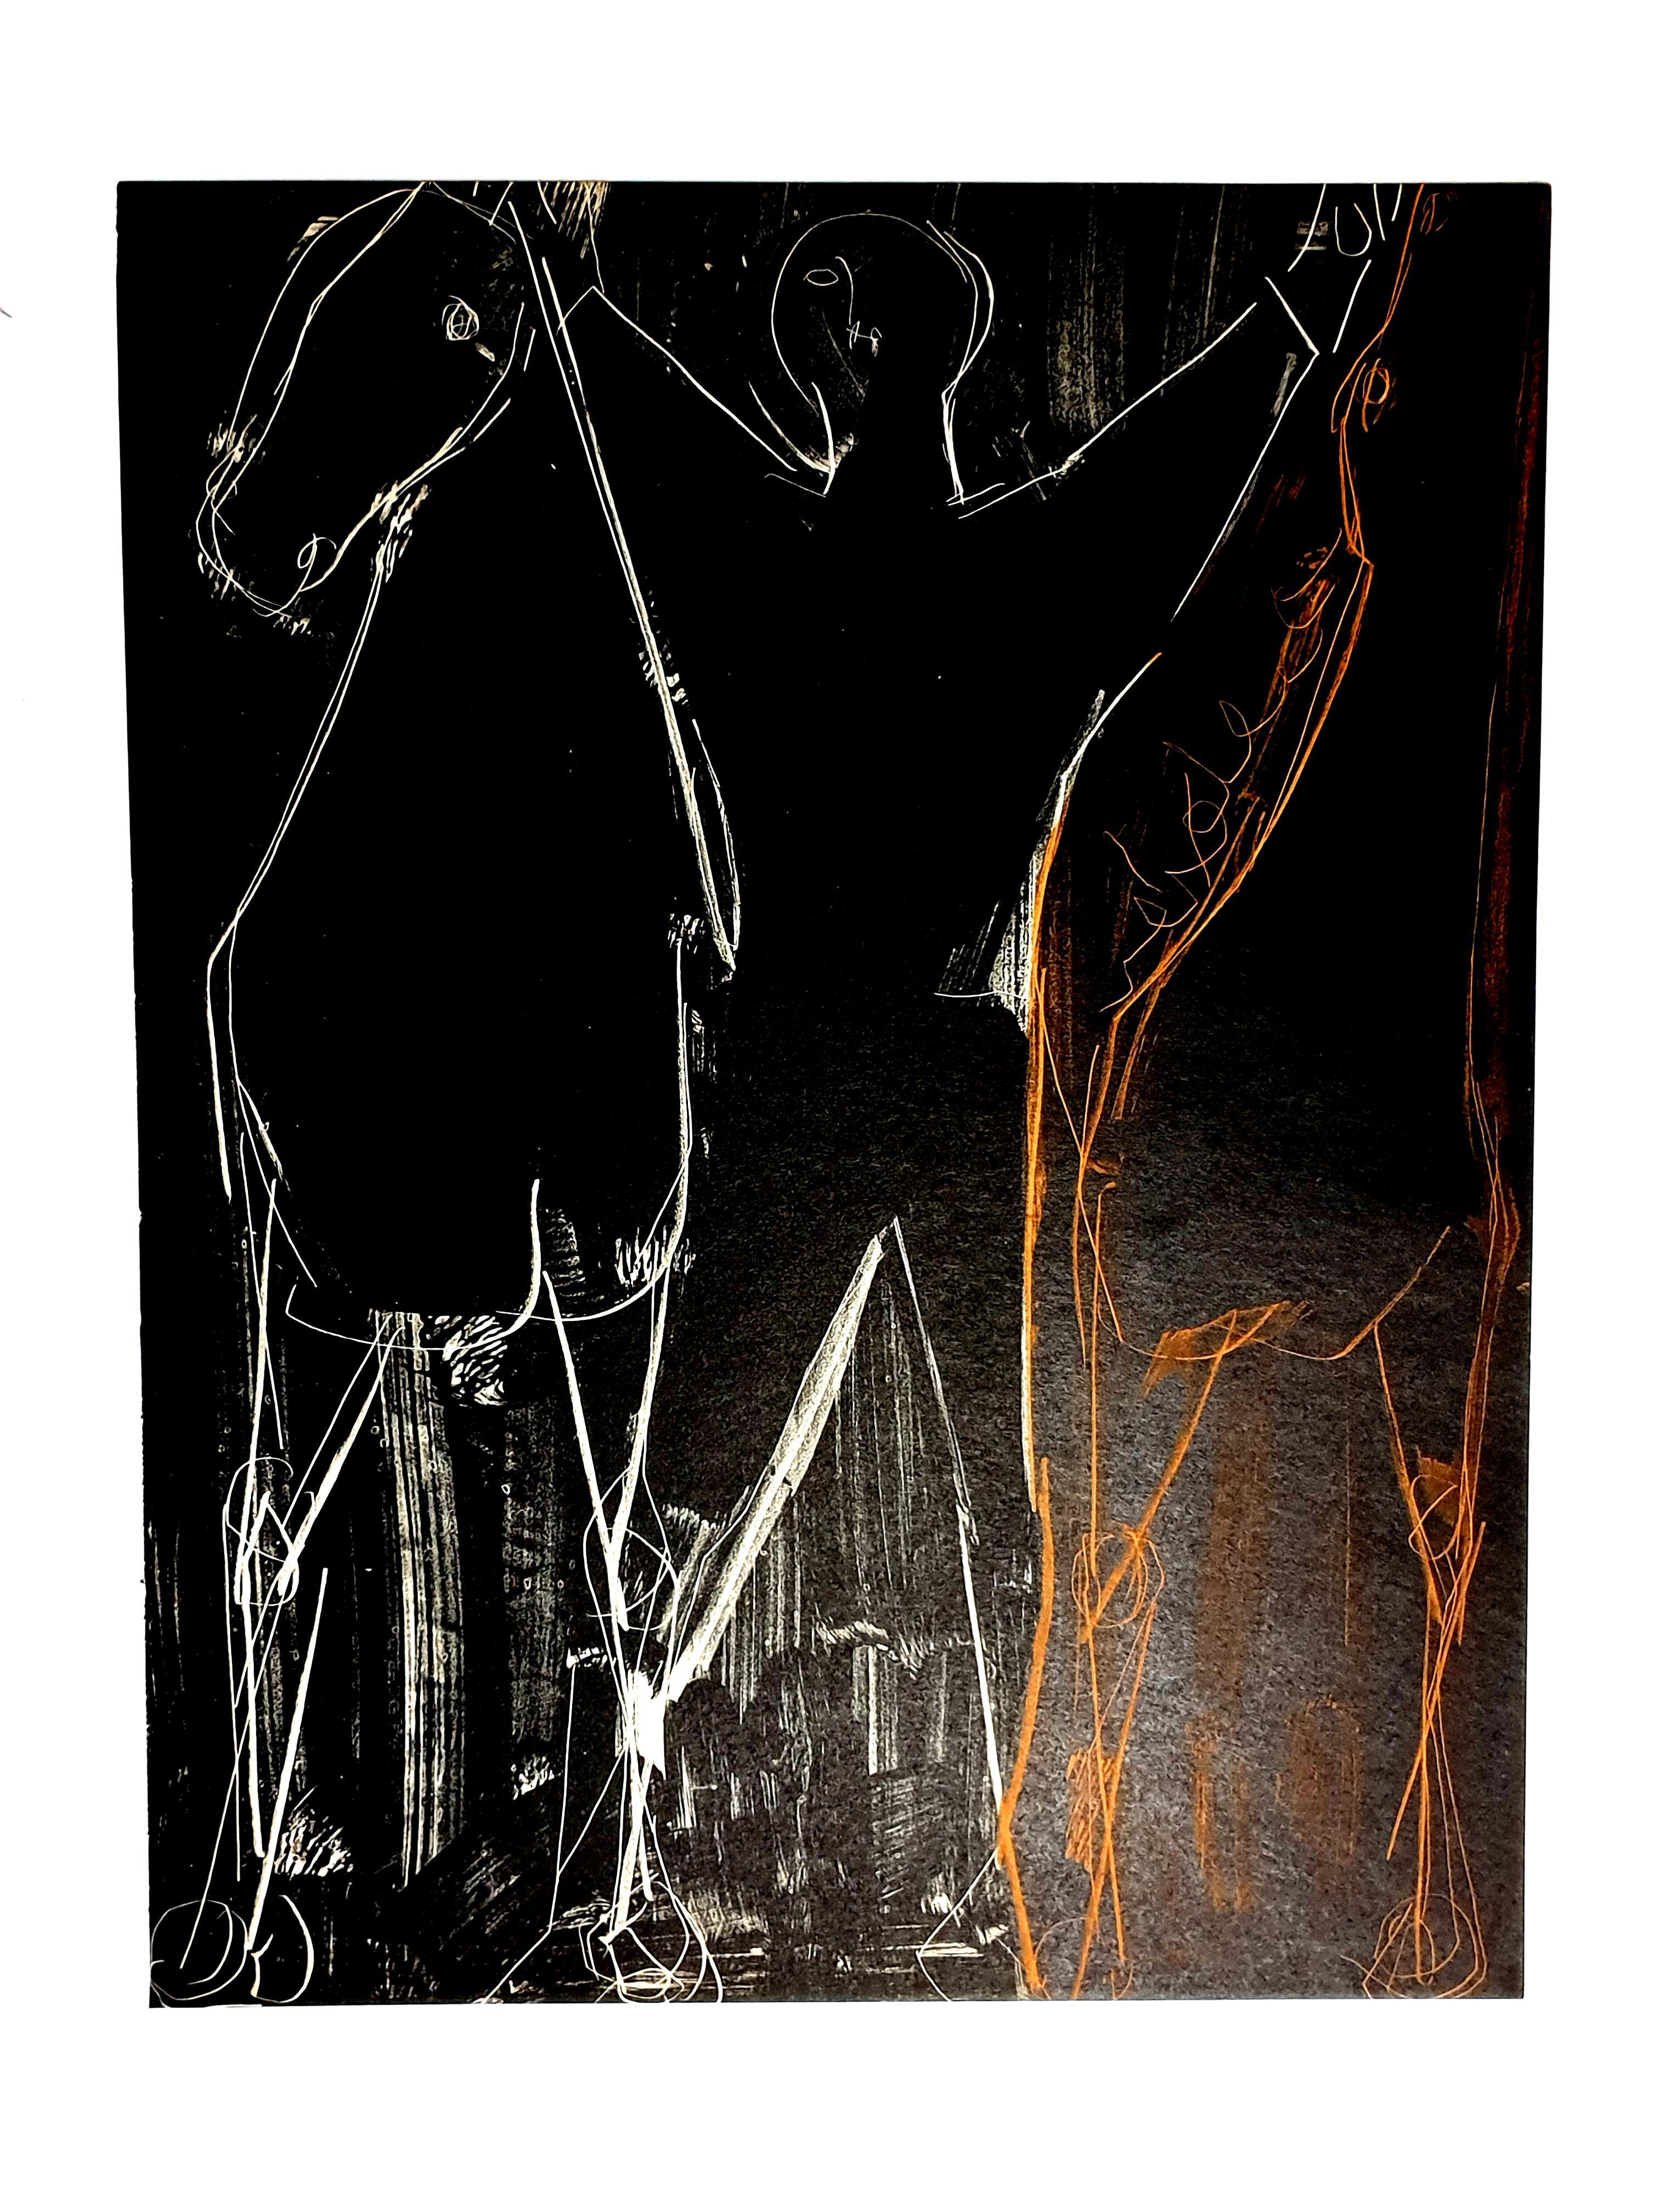 Marino Marini - Pferde - Original Lithographie
1951
Abmessungen: 32 x 24 cm
Aus der Kunstzeitschrift XXe siècle
Unsigniert und nicht nummeriert wie ausgestellt